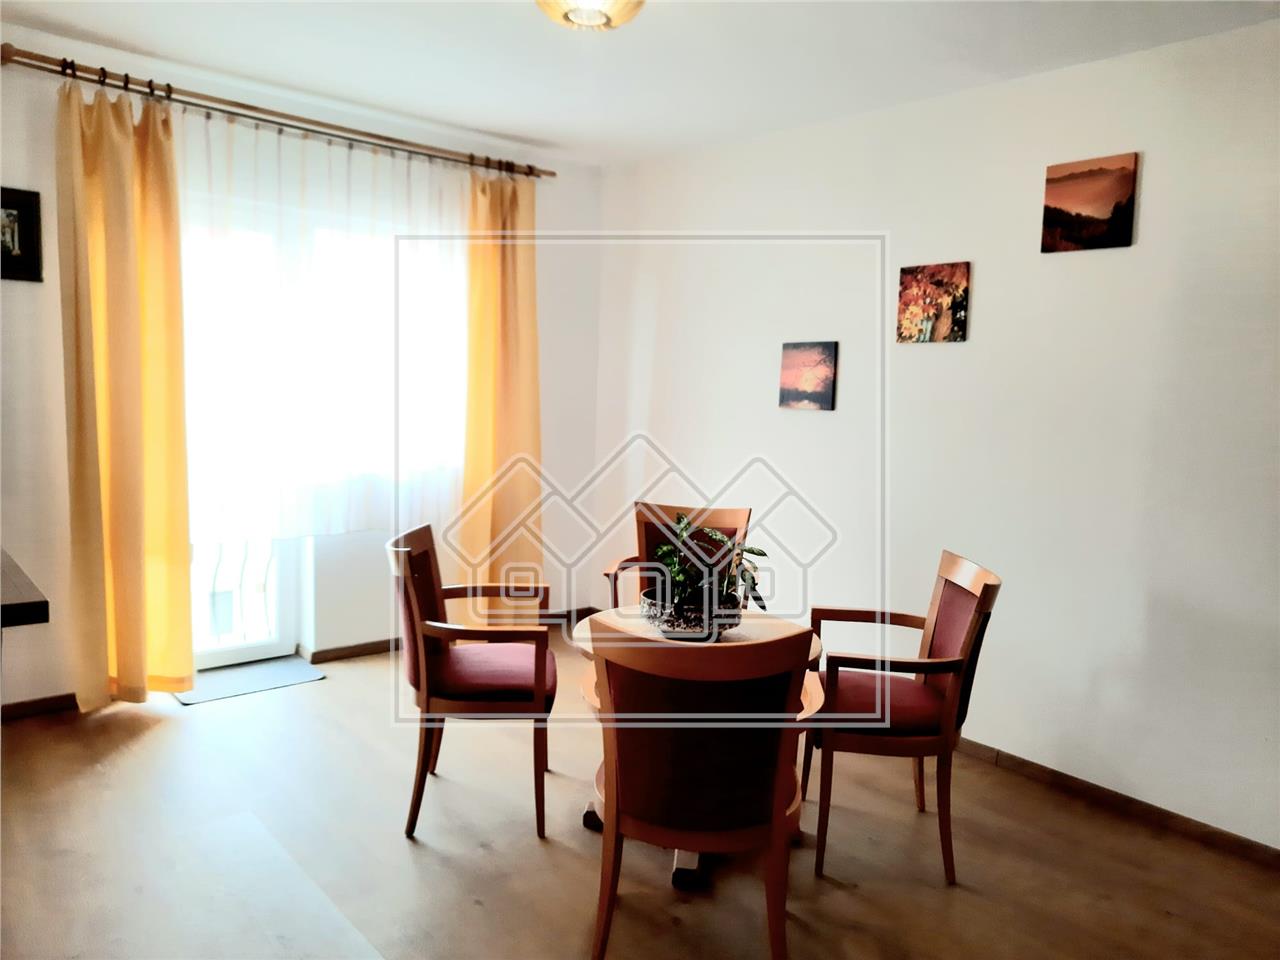 Apartment for sale in Sibiu (Attic) - Vasile Milea area